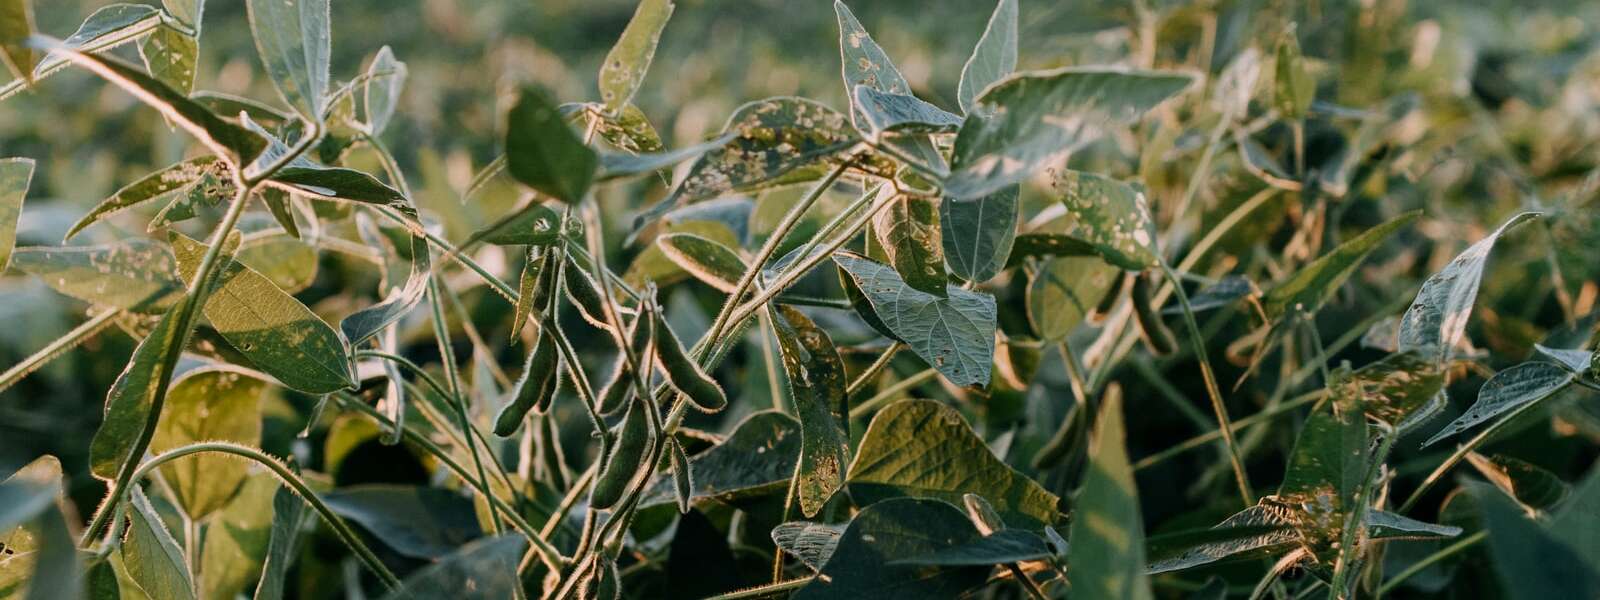 Green soybean plants.